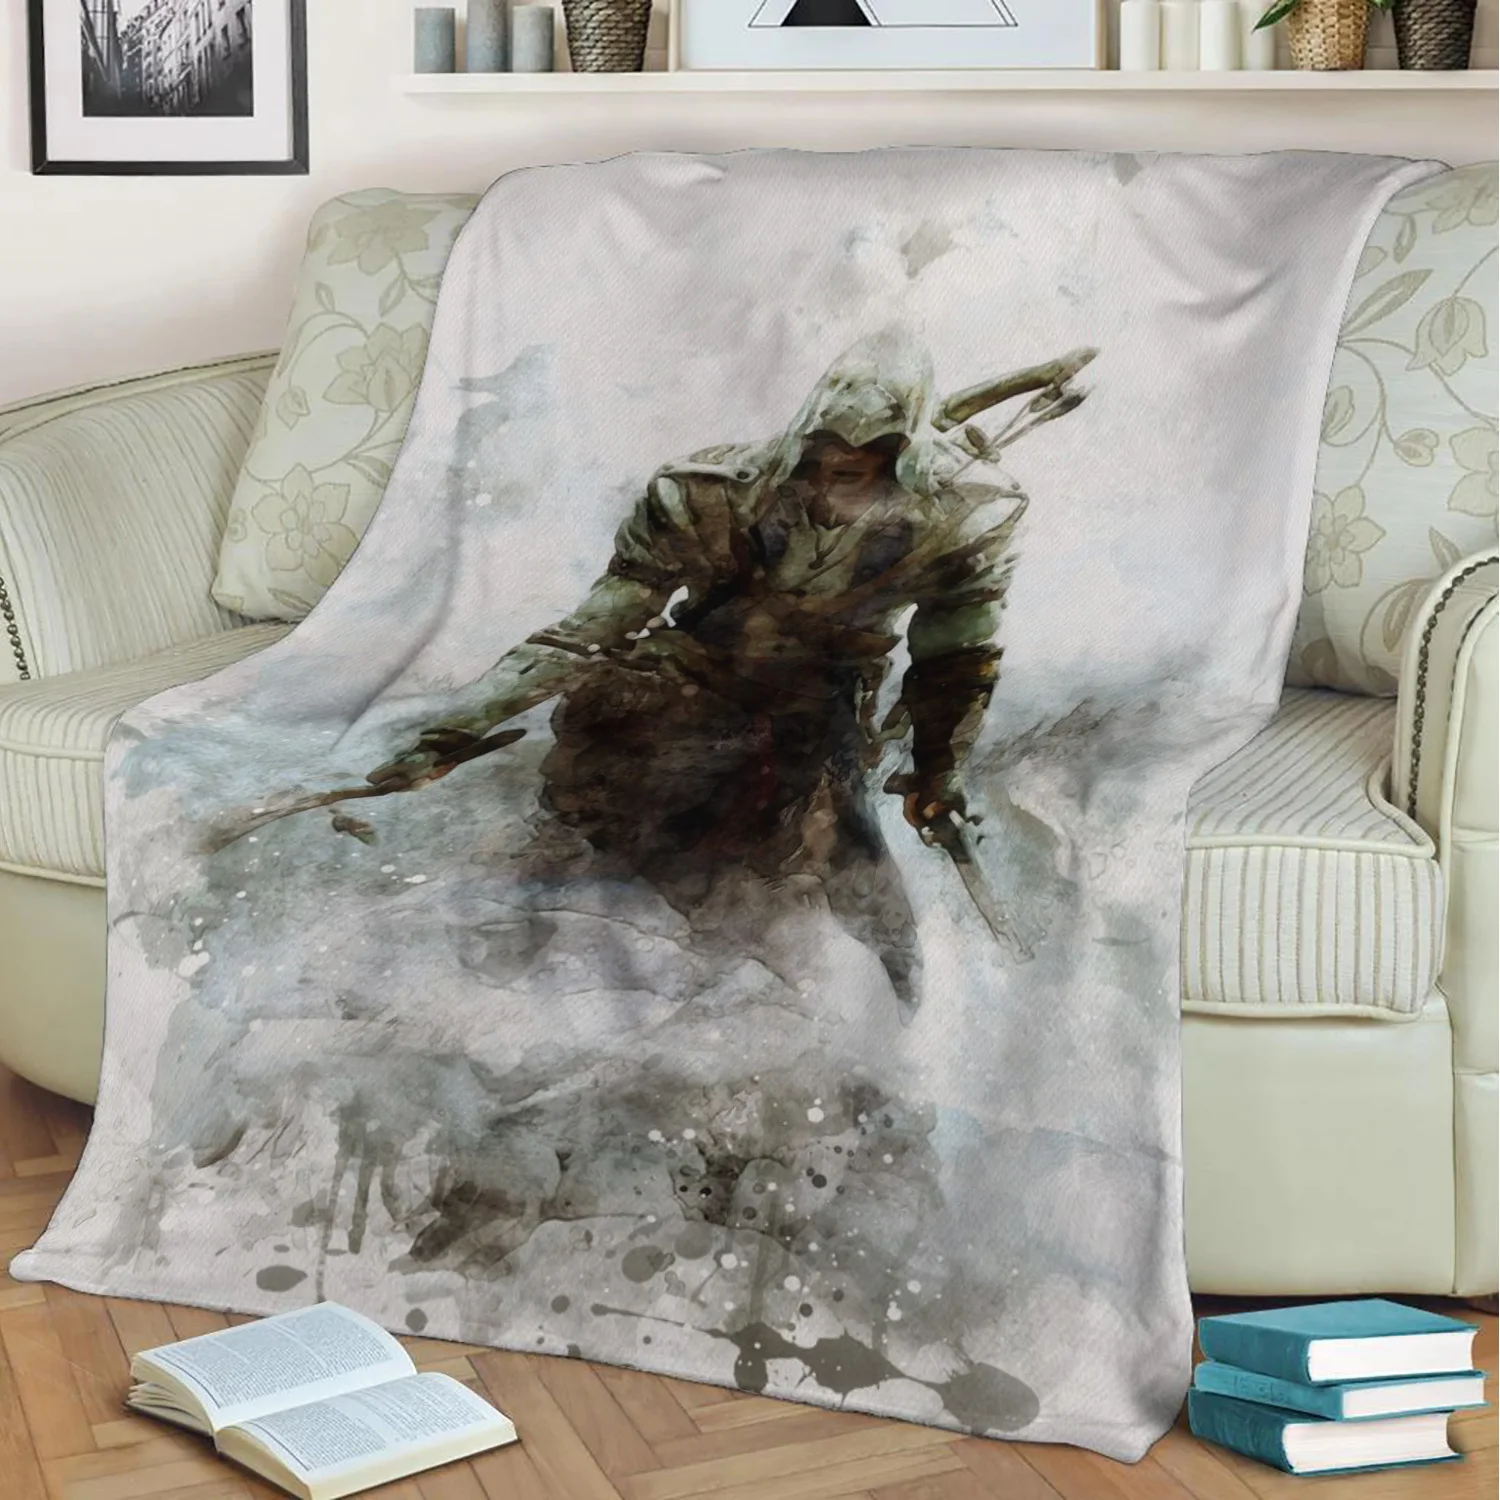 Assassins Creed III 3D Принты Плюшевые Одеяло пледы на диван домашний декор мягкие теплые